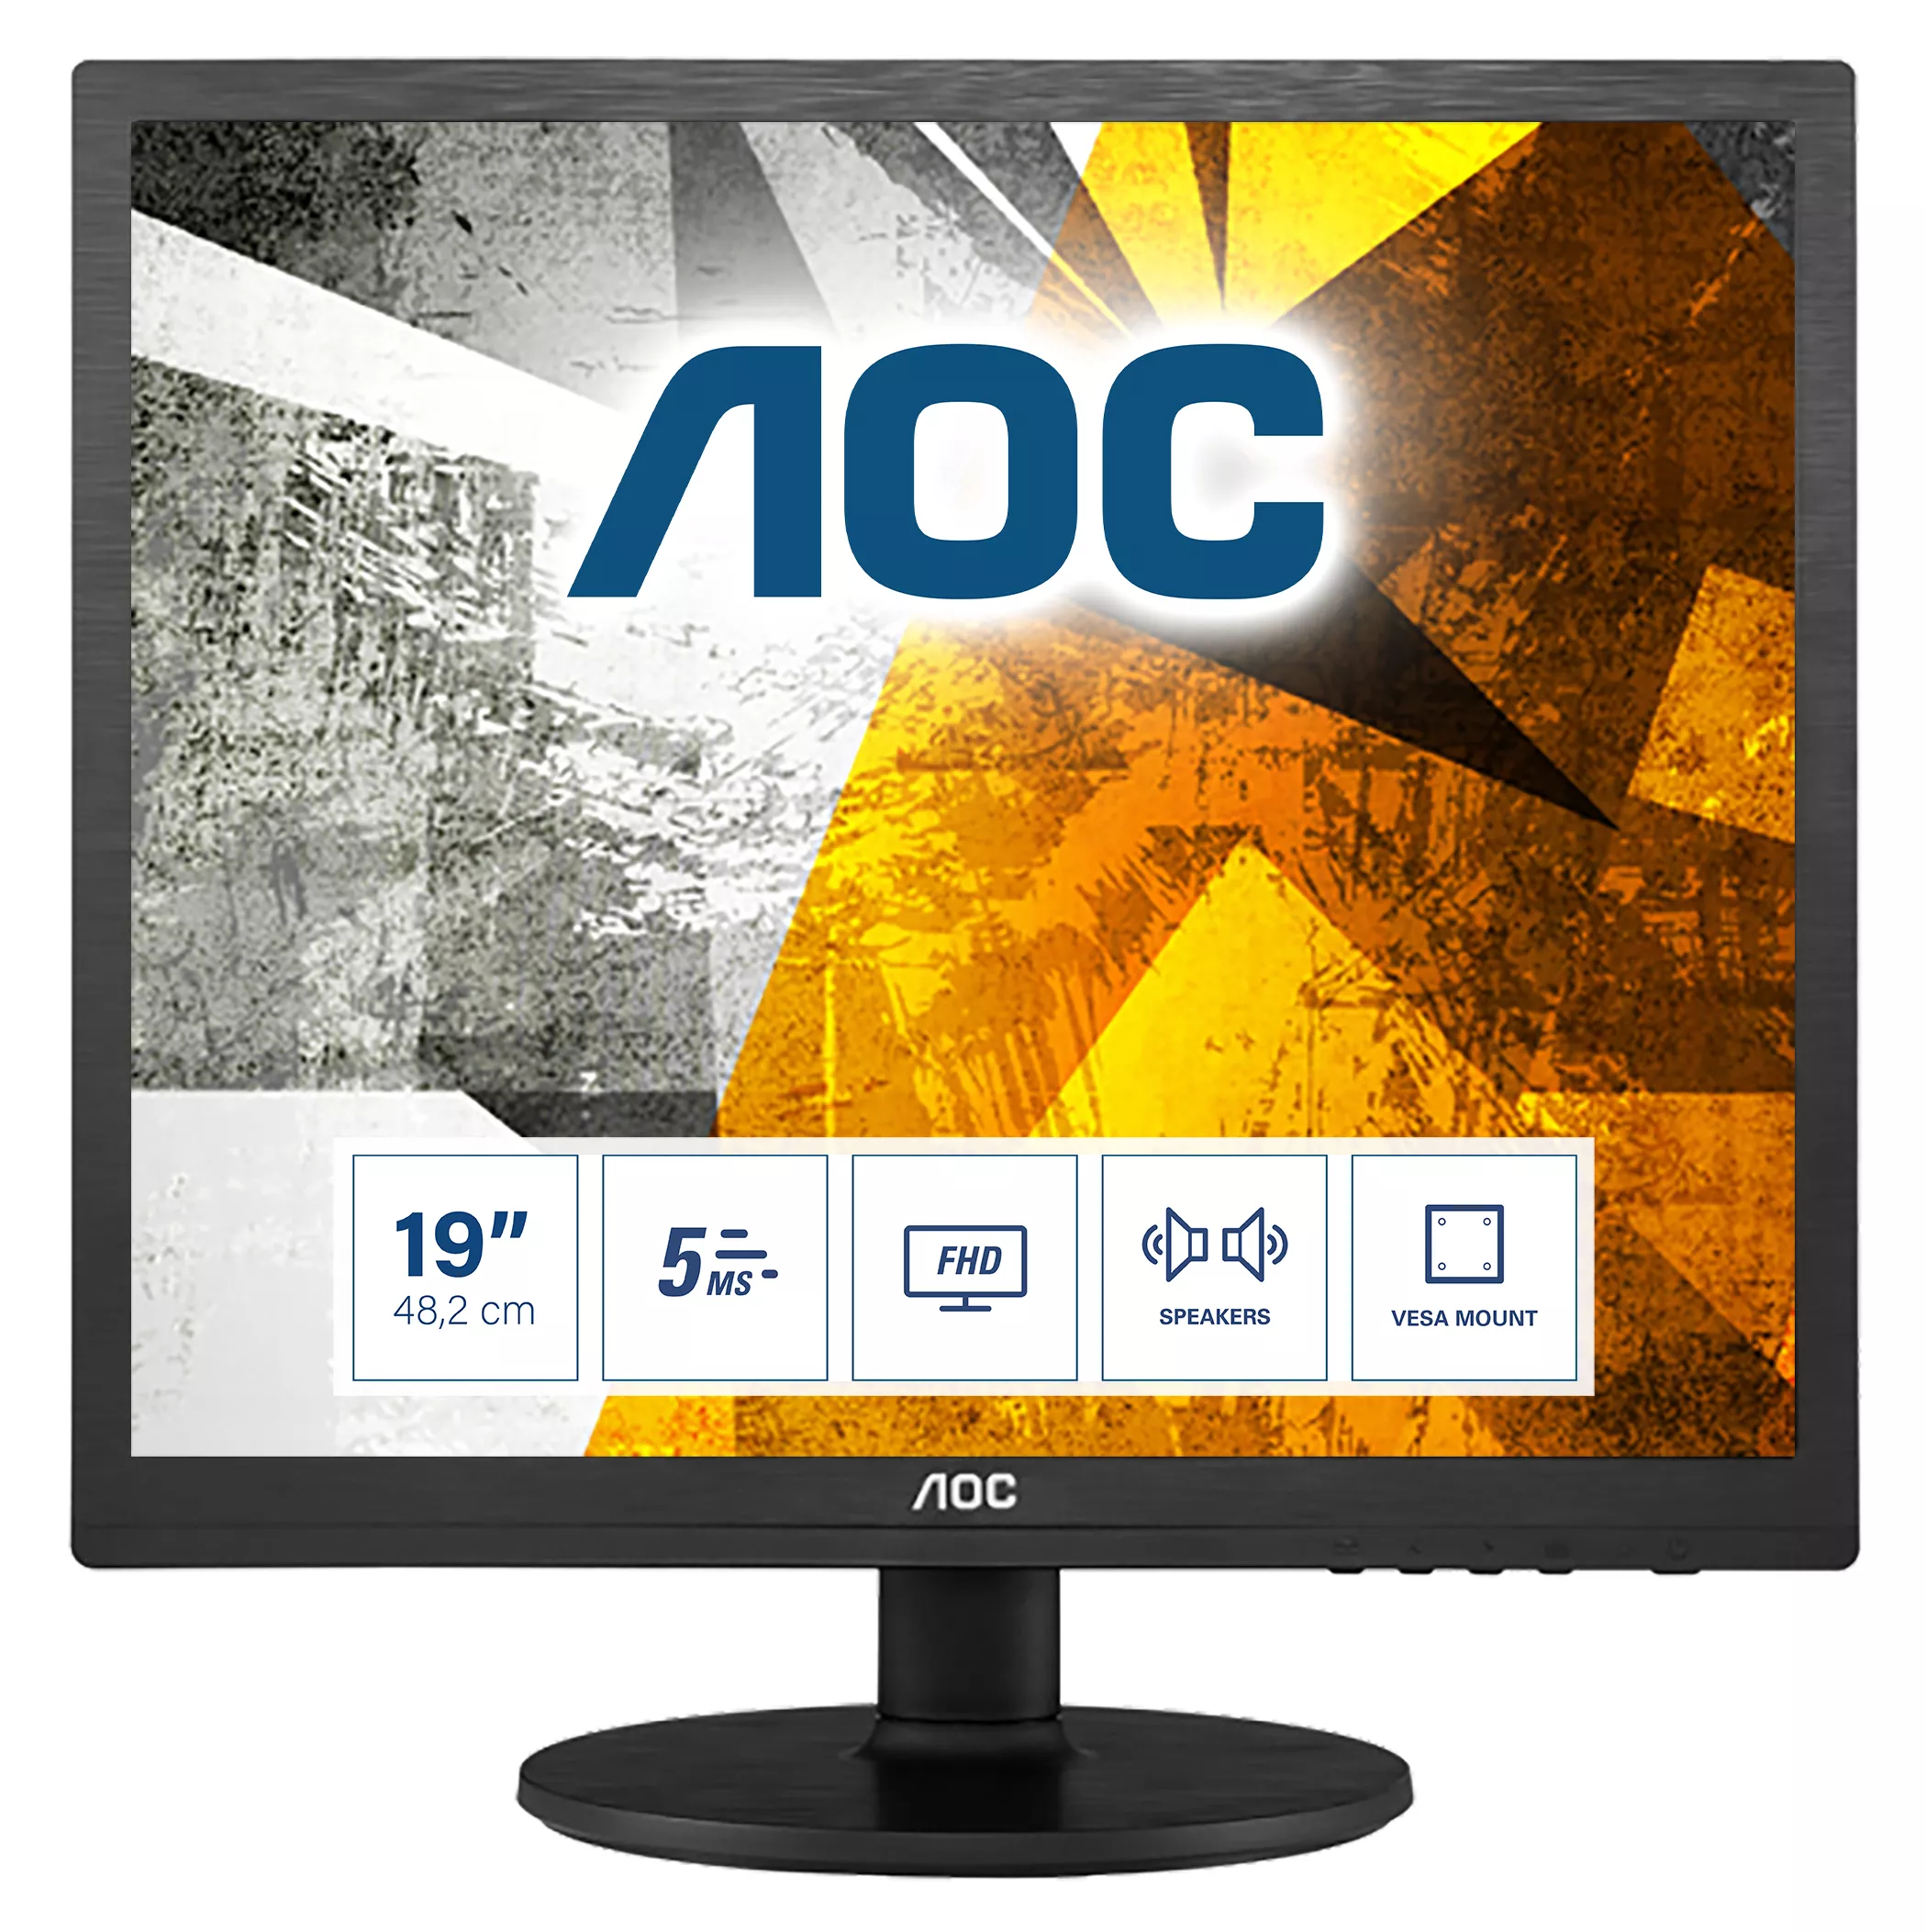 Achat AOC 0 Series I960SRDA au meilleur prix